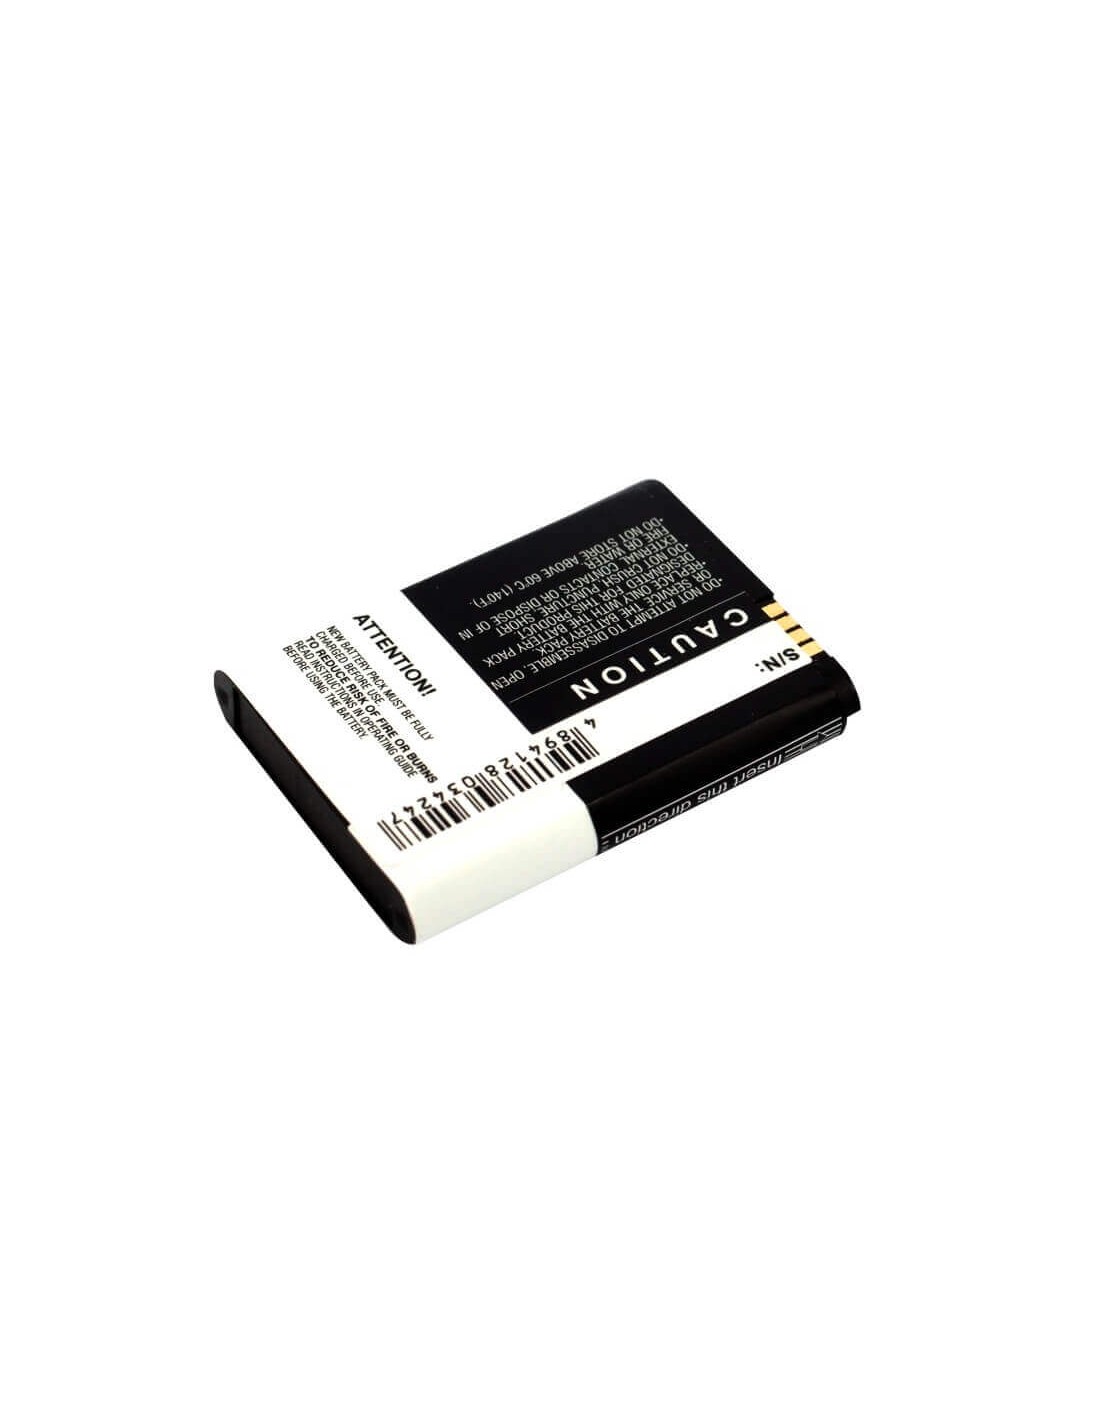 Battery for Motorola Backflip, Motus, ME600 3.7V, 1100mAh - 4.07Wh